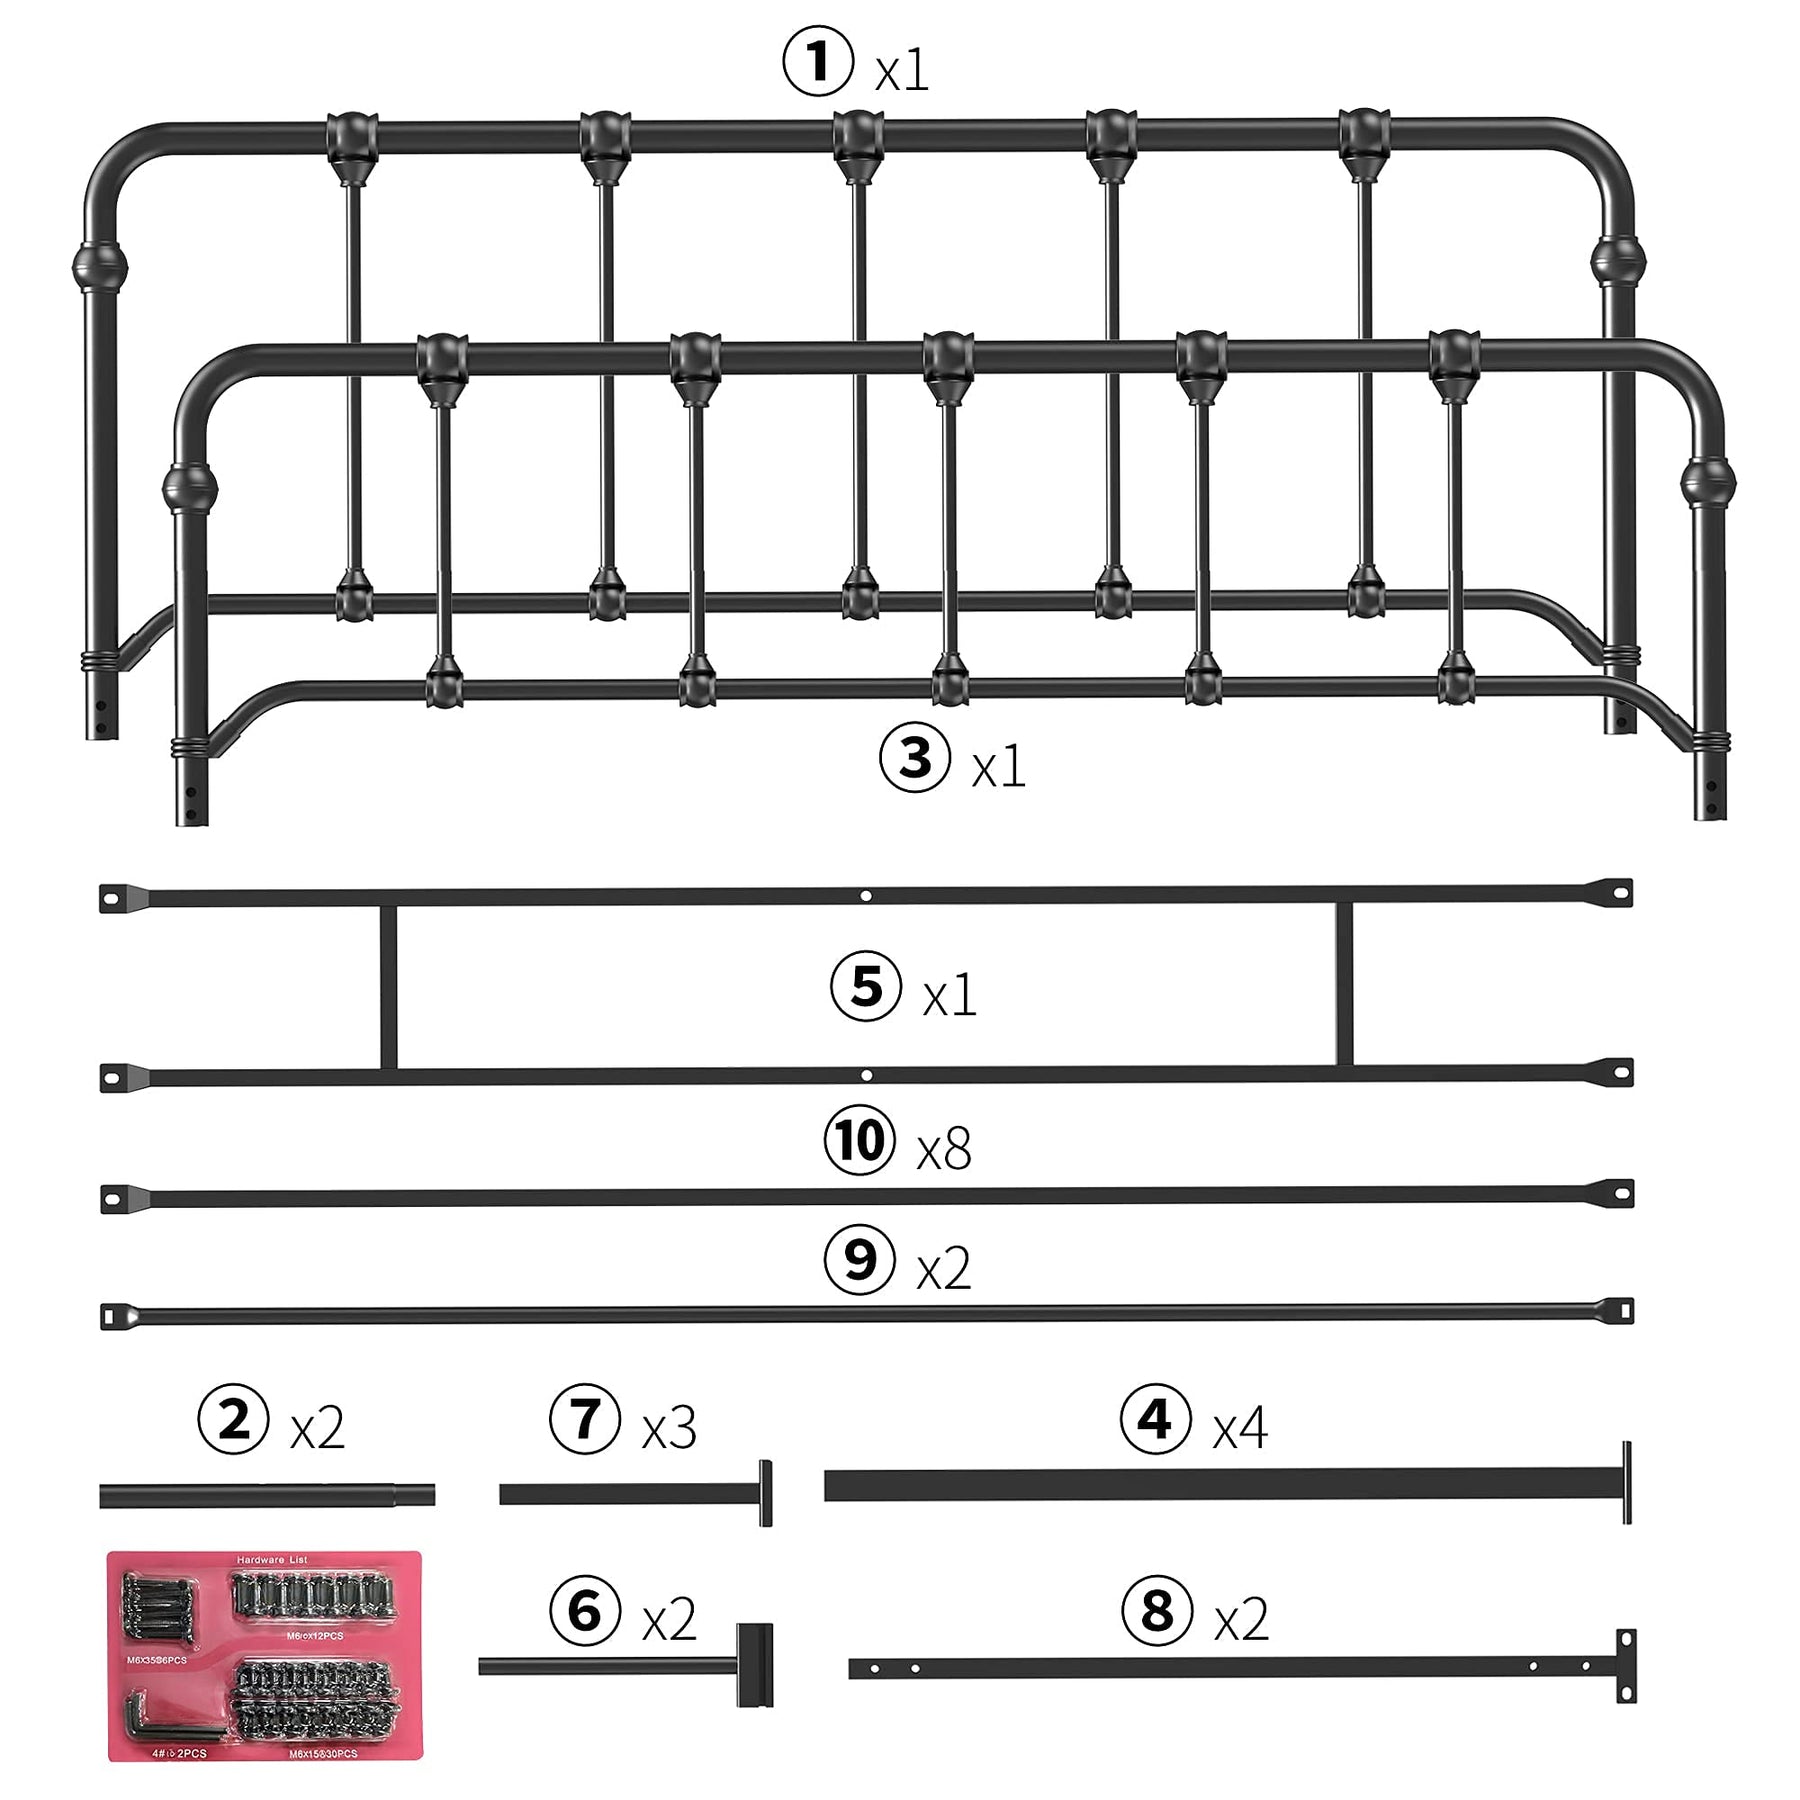 IDEALHOUSE Full Size Metal Bed Frame Black Platform Bed